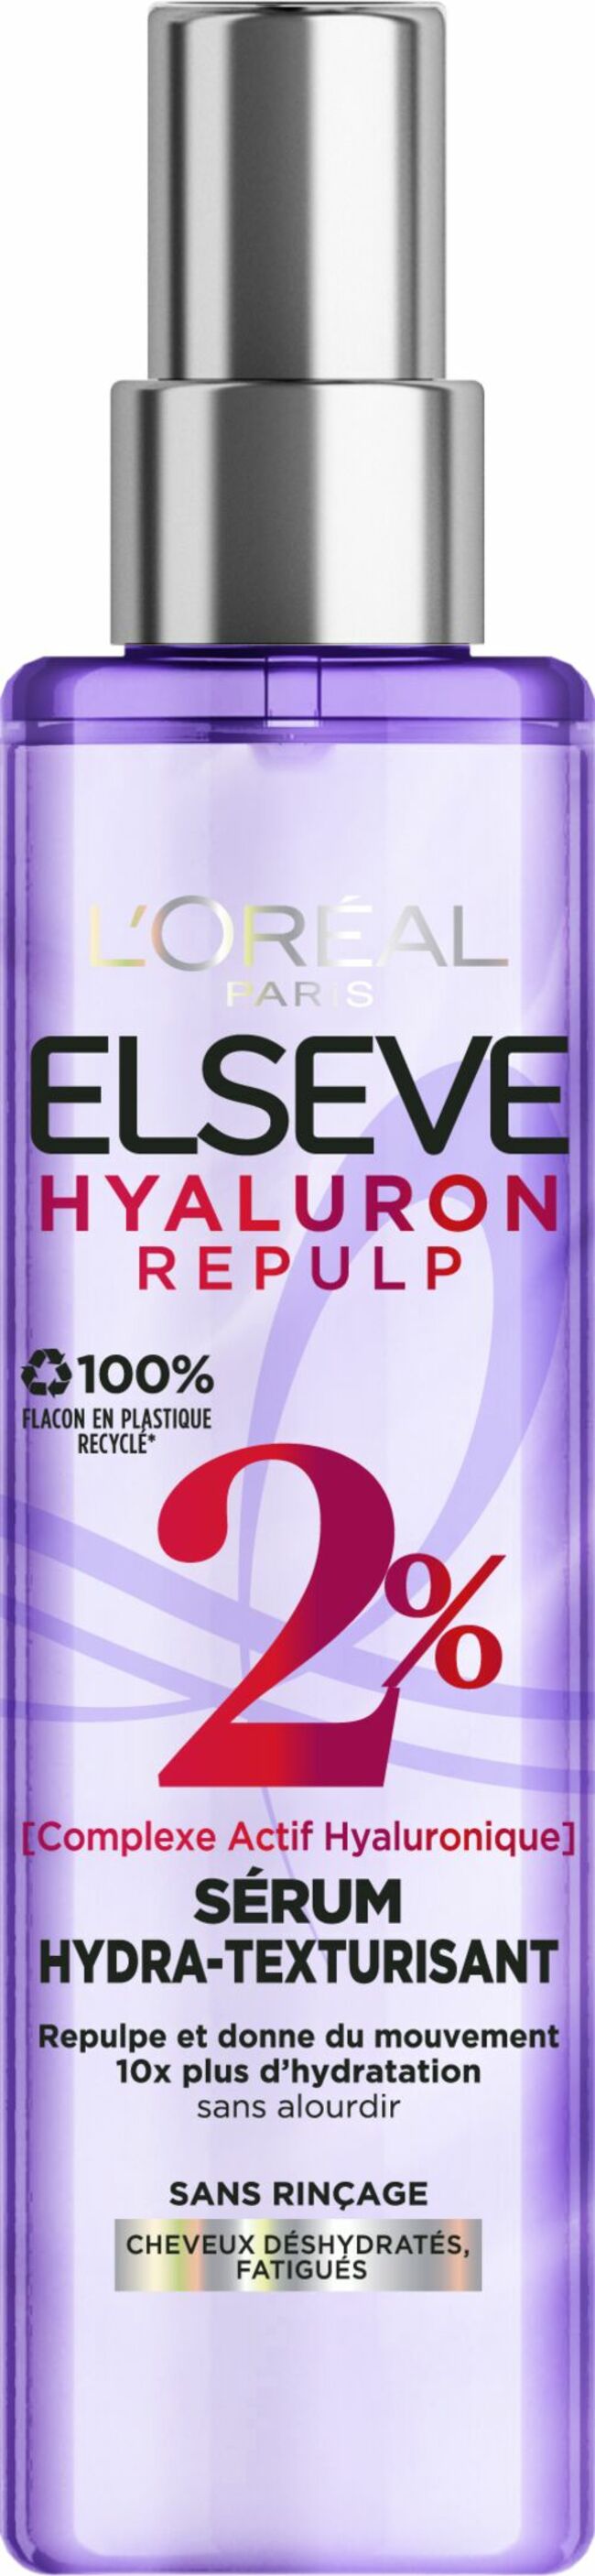 Elsève Hyaluron Repulp Sérum Hydra-Texturisant, L’Oréal Paris, 11,90 €.